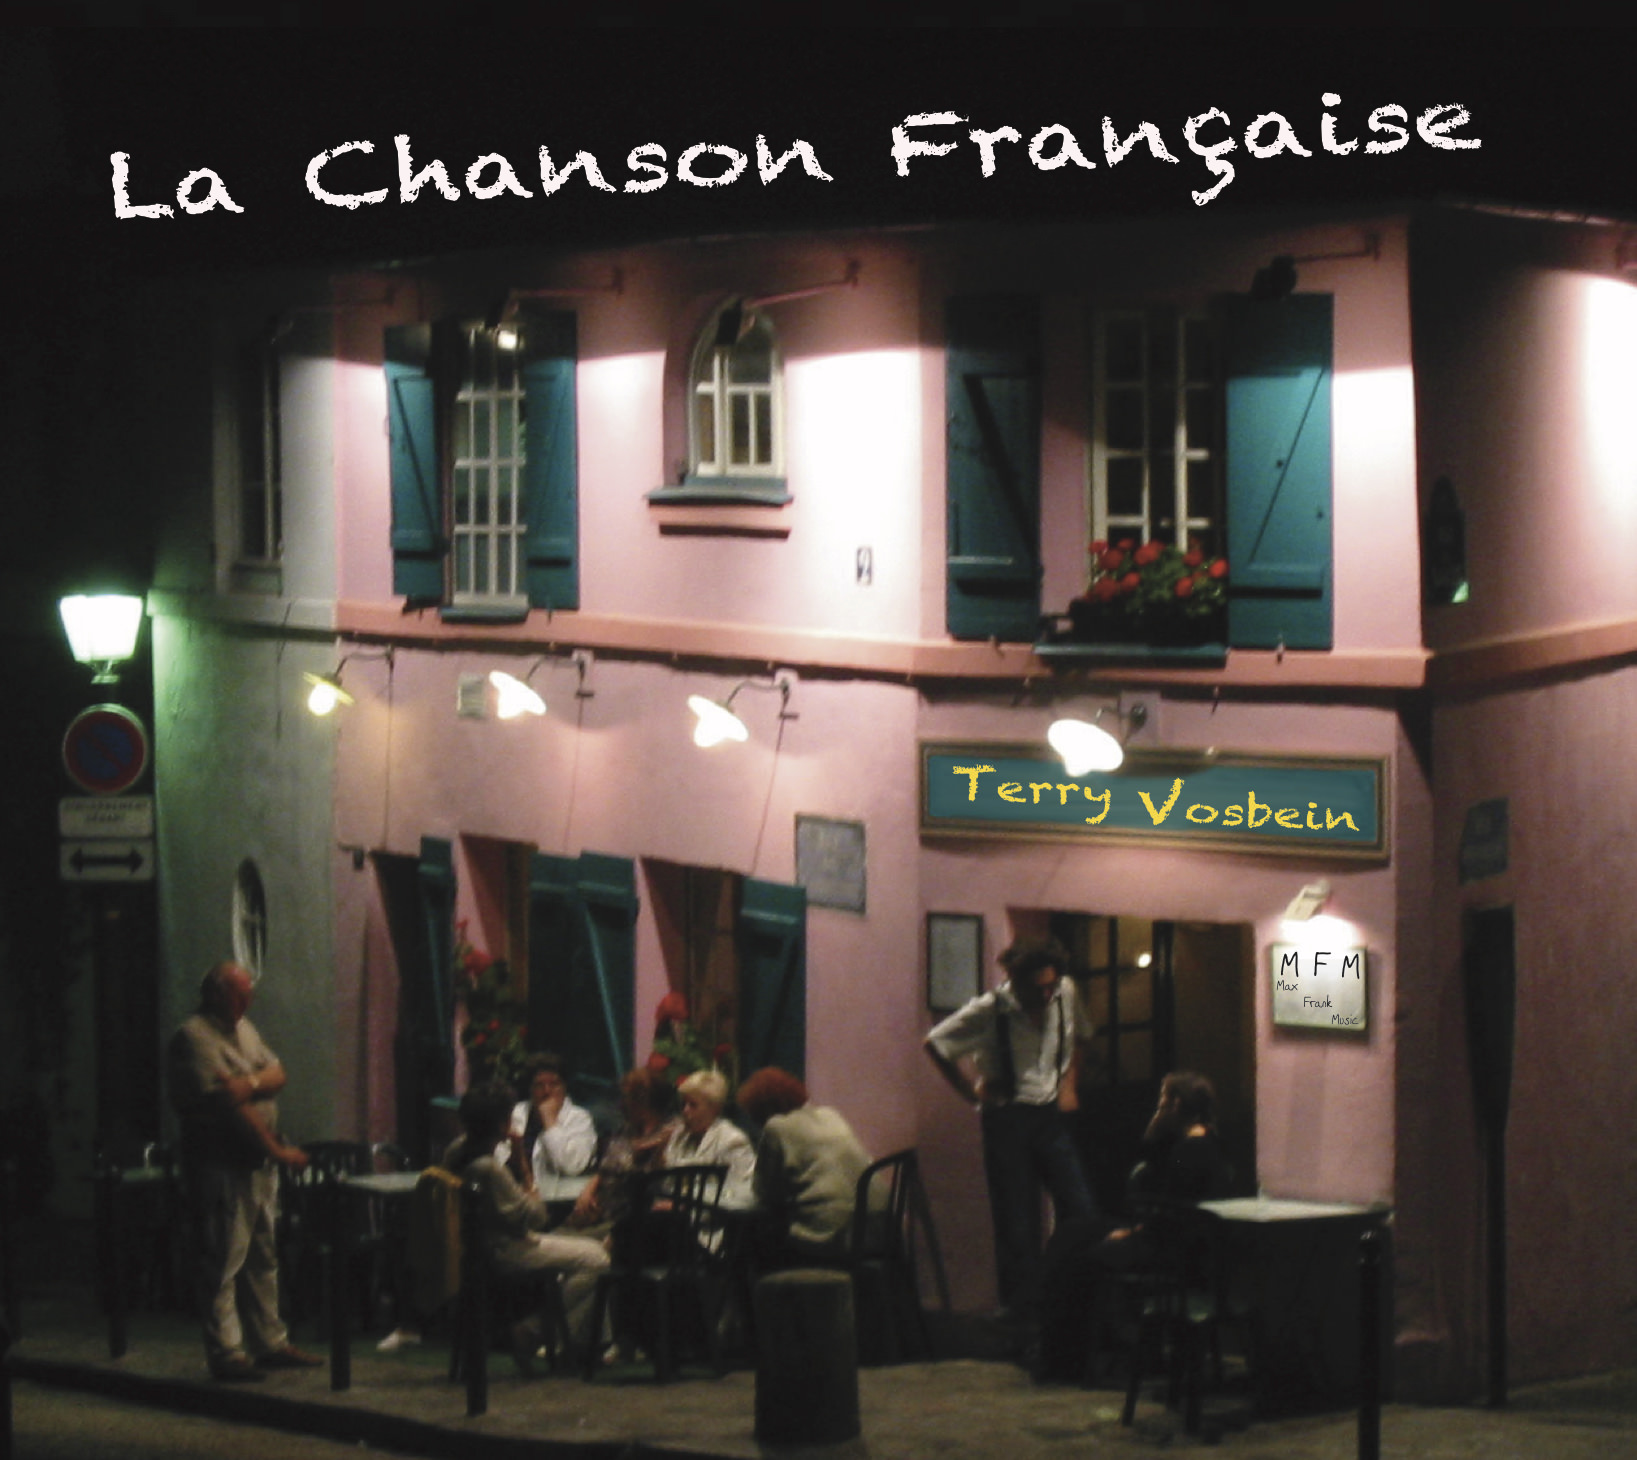 La Chanson Francaise